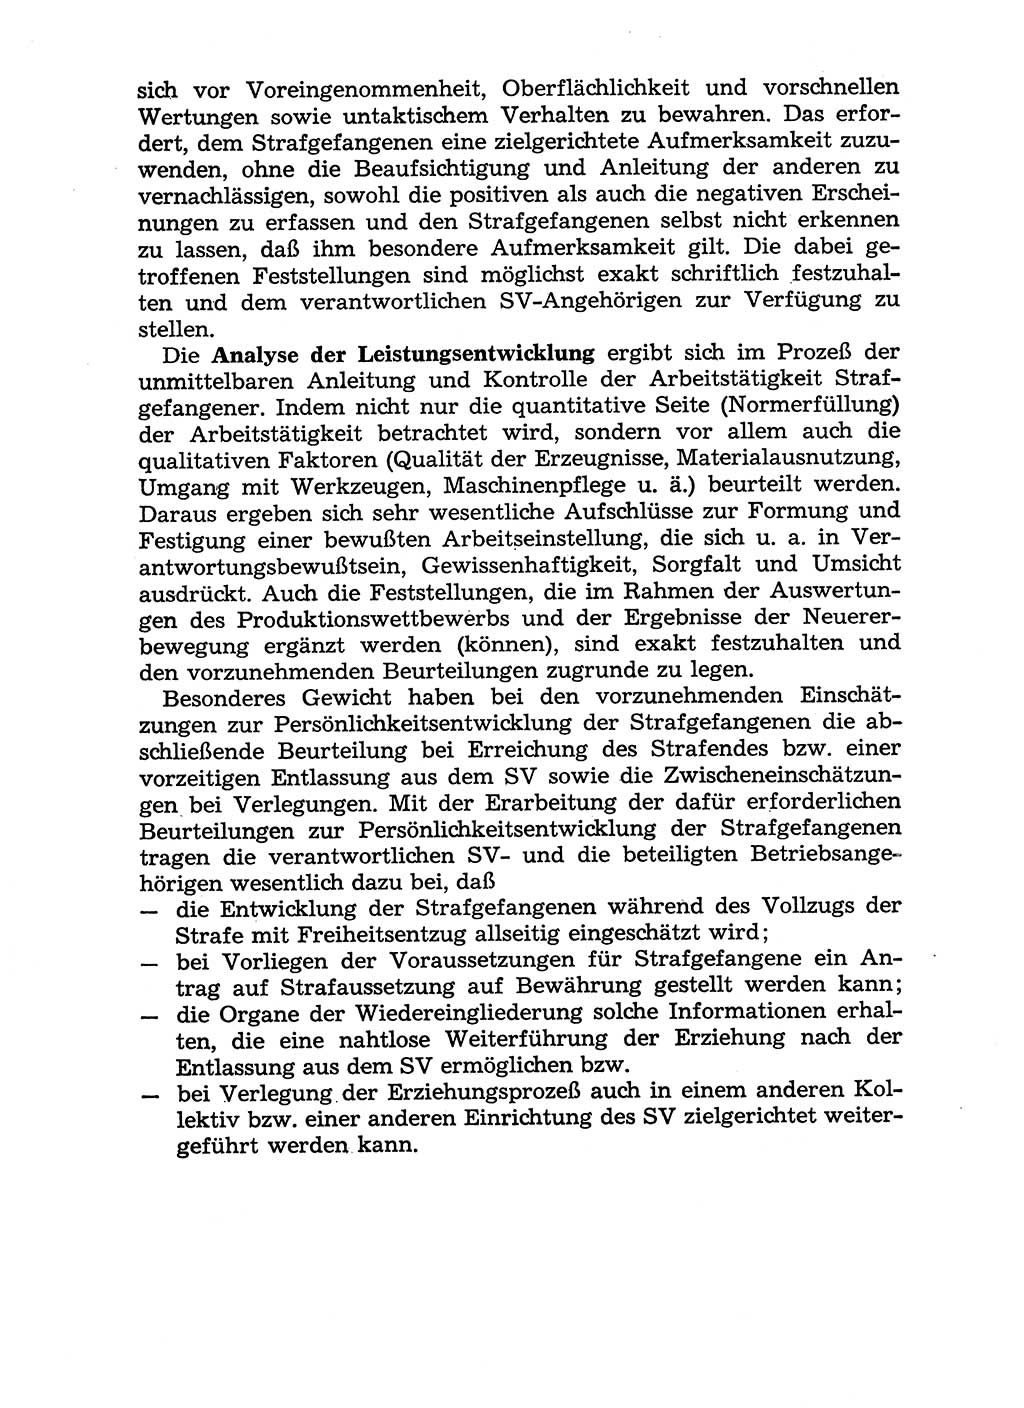 Handbuch für Betriebsangehörige, Abteilung Strafvollzug (SV) [Ministerium des Innern (MdI) Deutsche Demokratische Republik (DDR)] 1981, Seite 148 (Hb. BA Abt. SV MdI DDR 1981, S. 148)